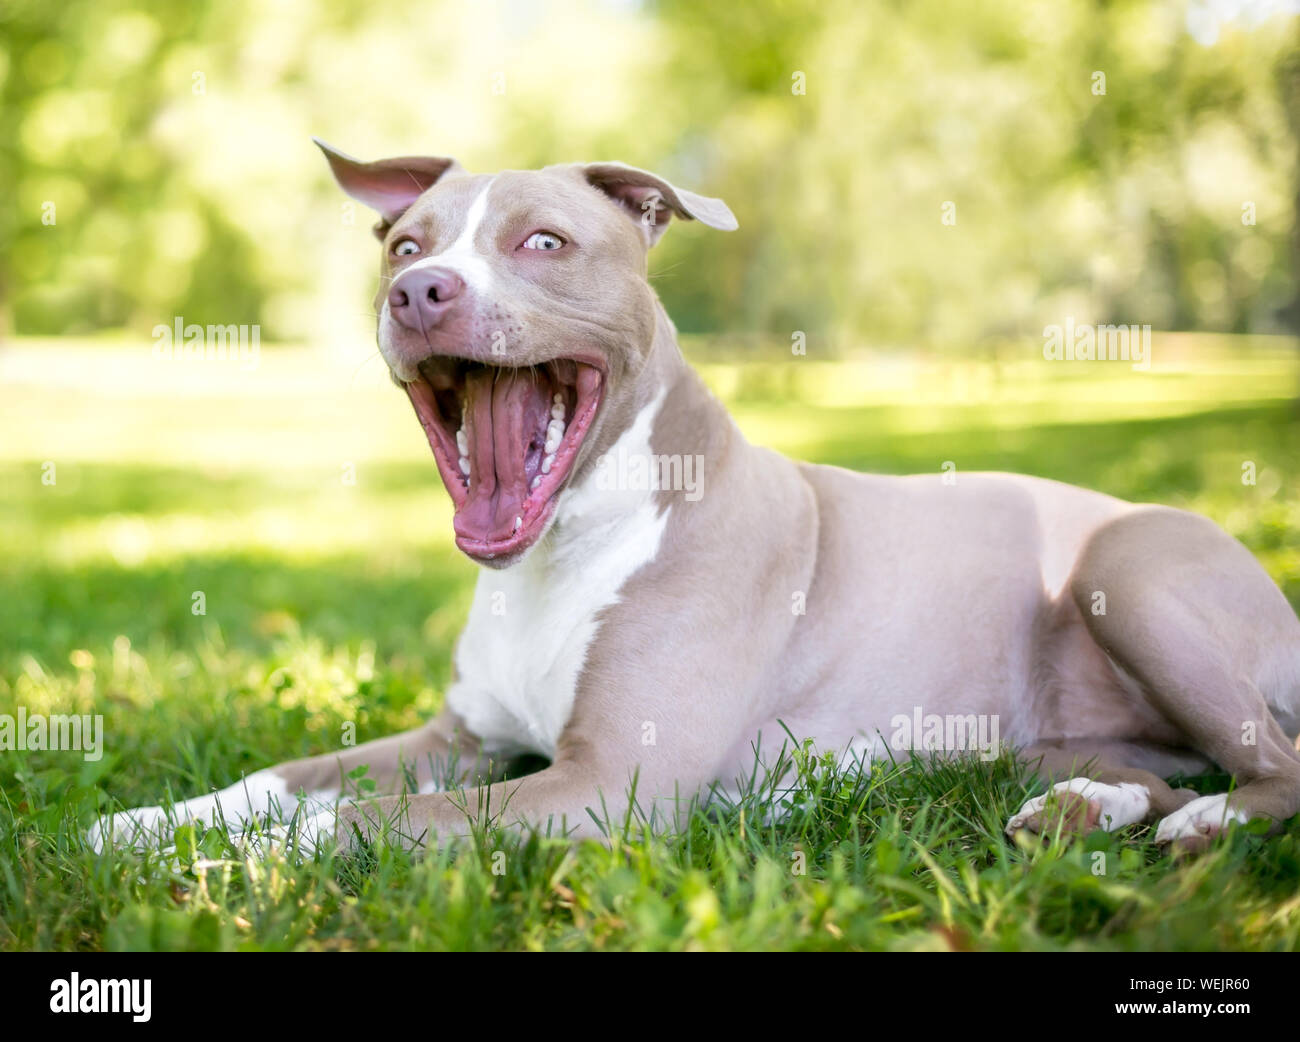 Eine tan und weiße Grube Stier Terrier Mischling Hund im Gras liegend mit einem glücklichen Ausdruck Stockfoto